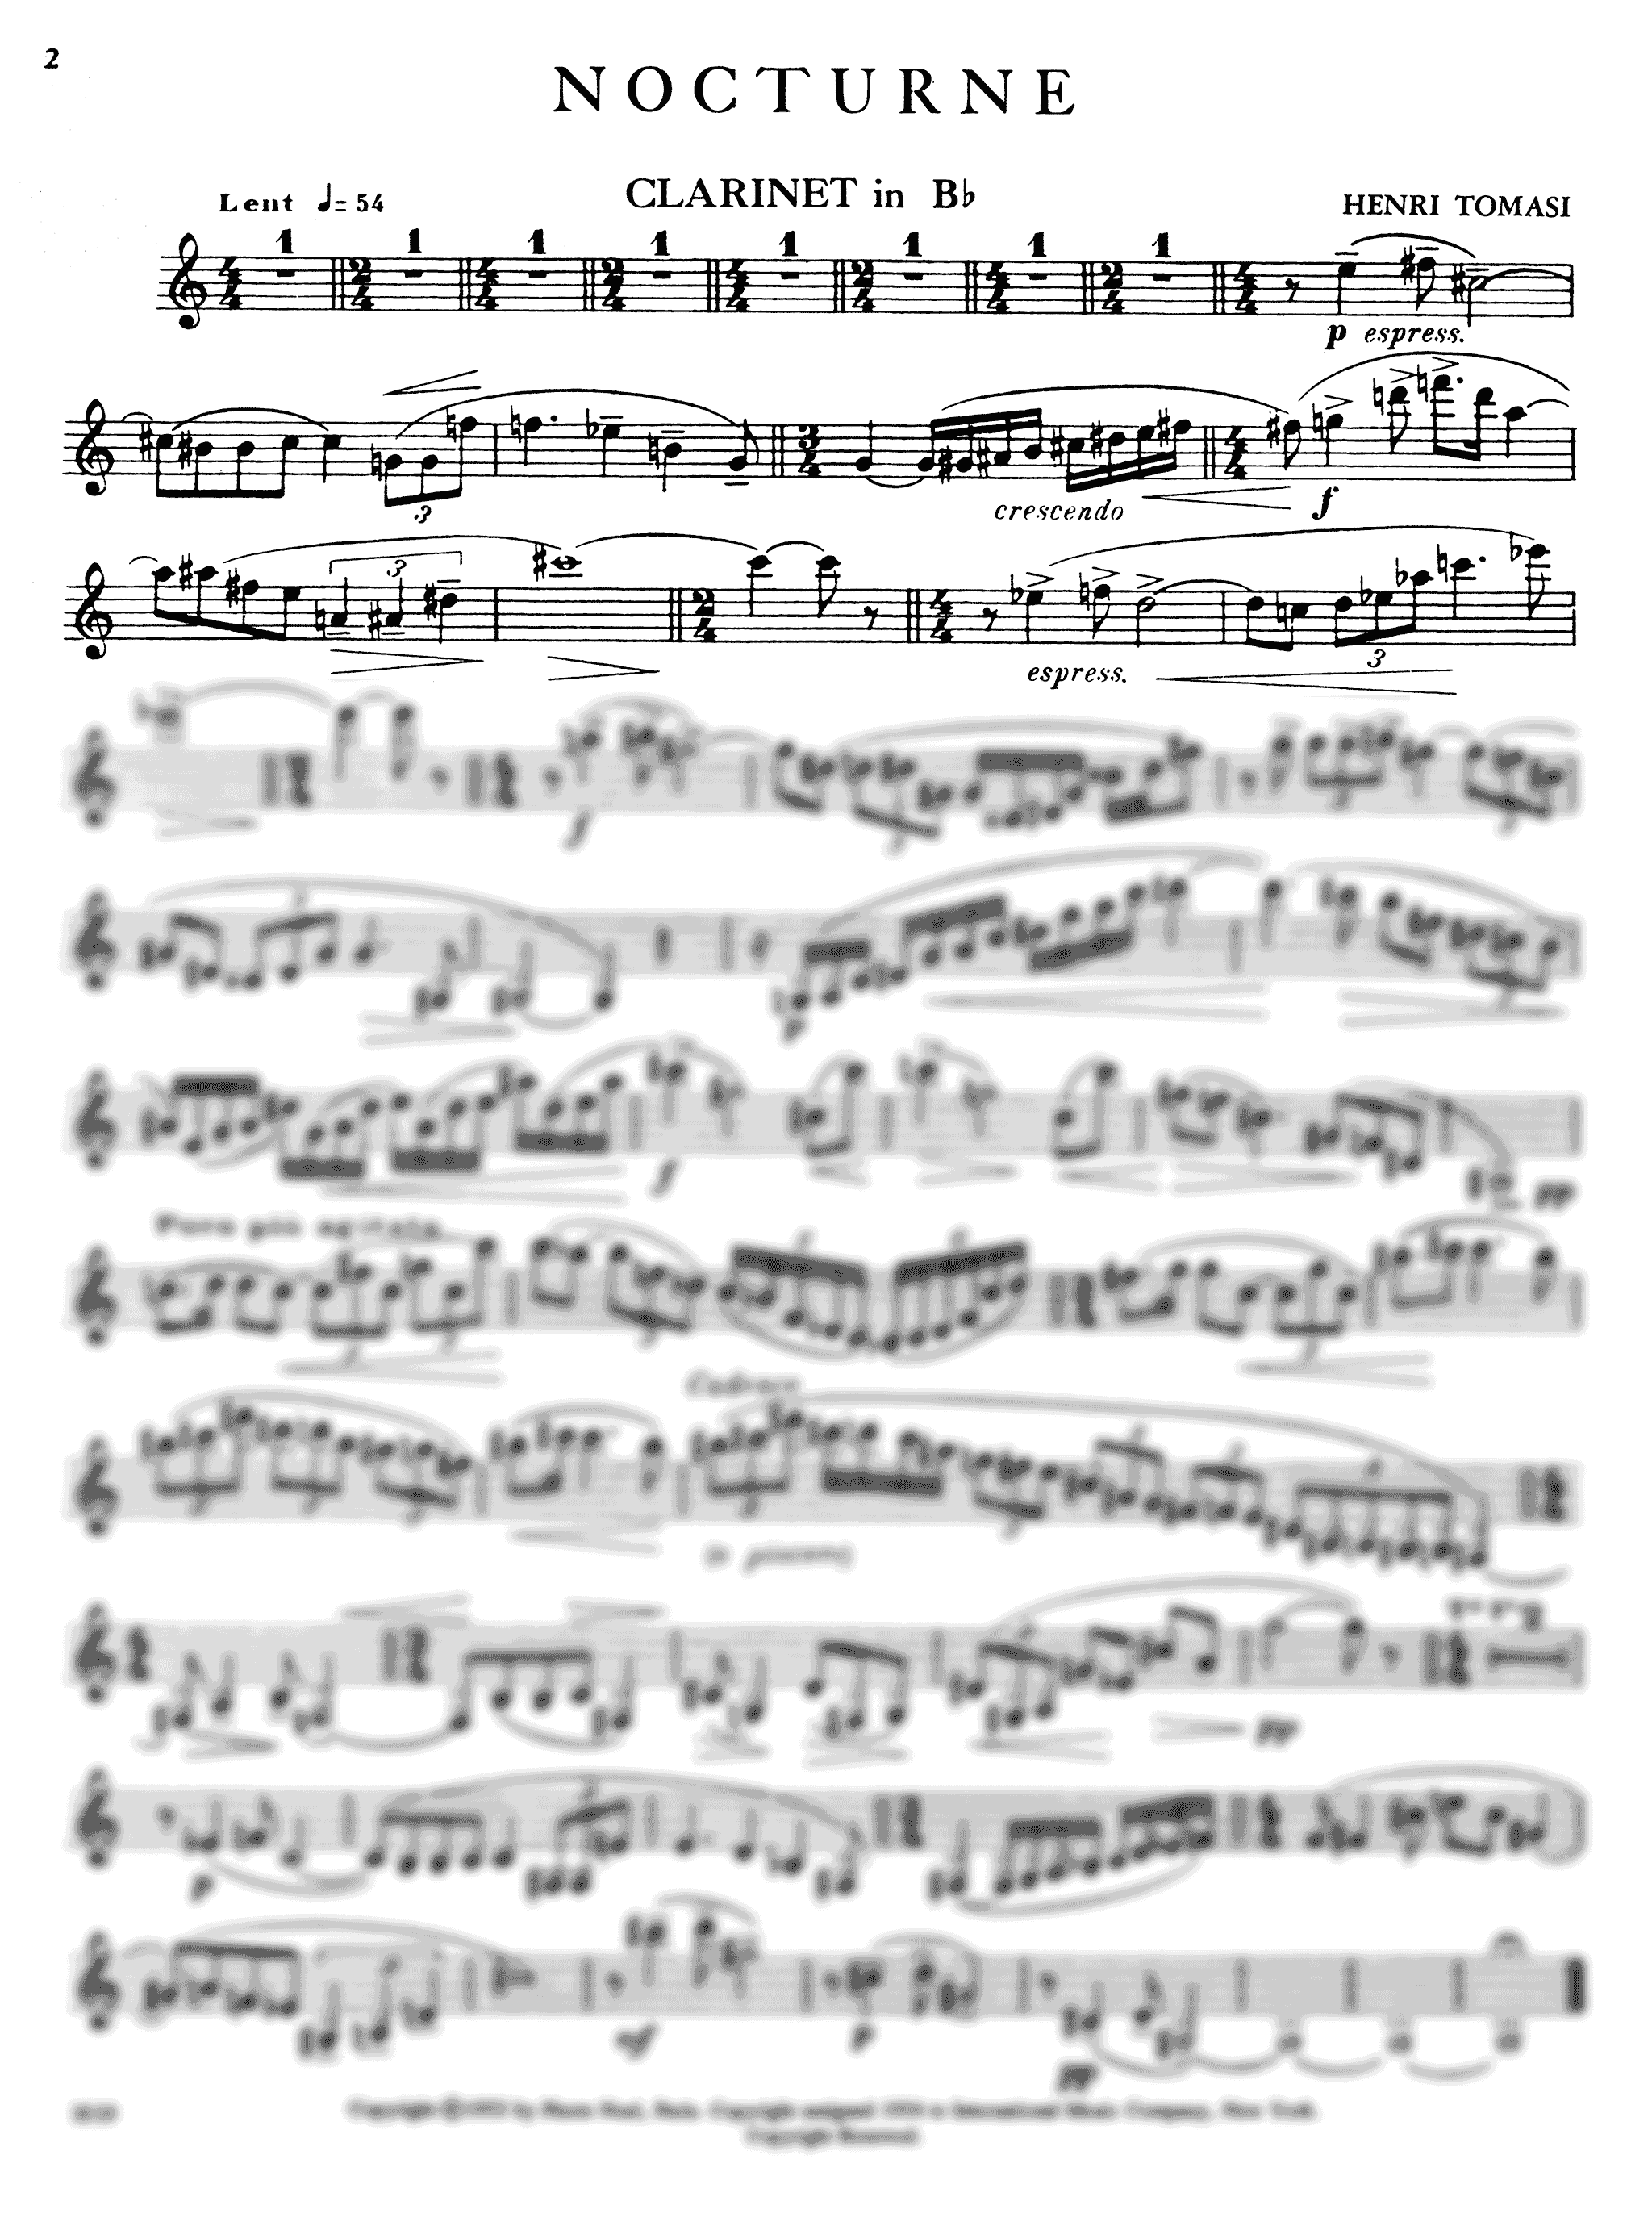 Tomasi Nocturne clarinet part